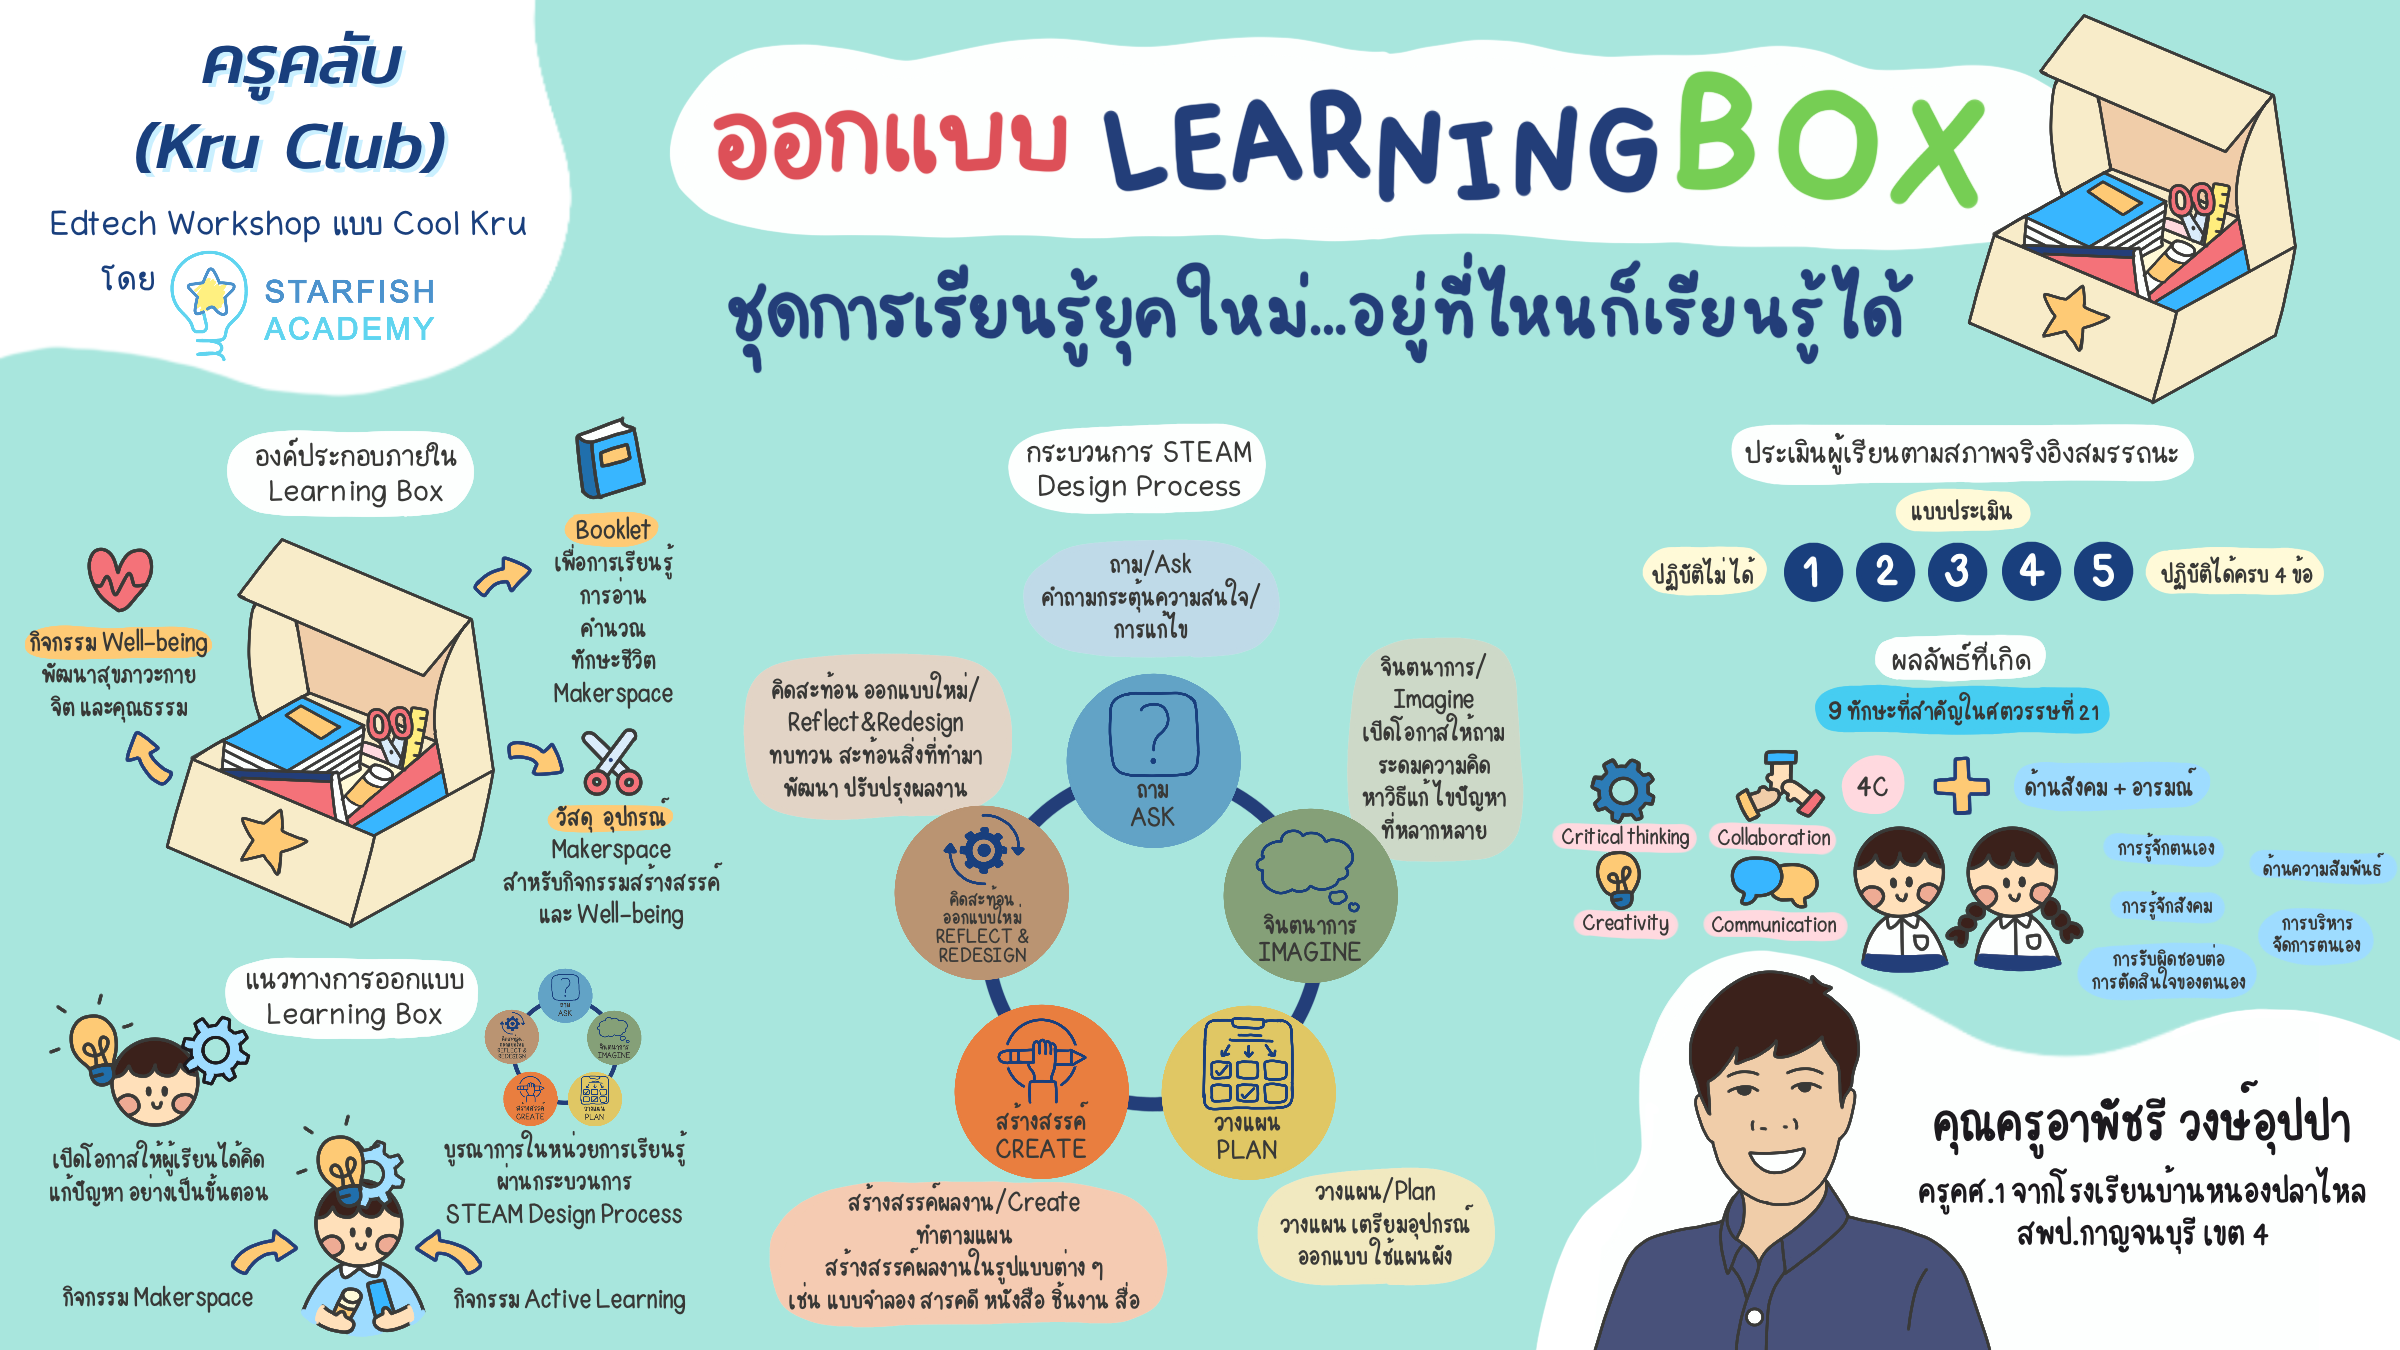 บทความ - ออกแบบ Learning Box ชุดการเรียนรู้ยุคใหม่ อยู่ที่ไหนก็เรียนรู้ได้